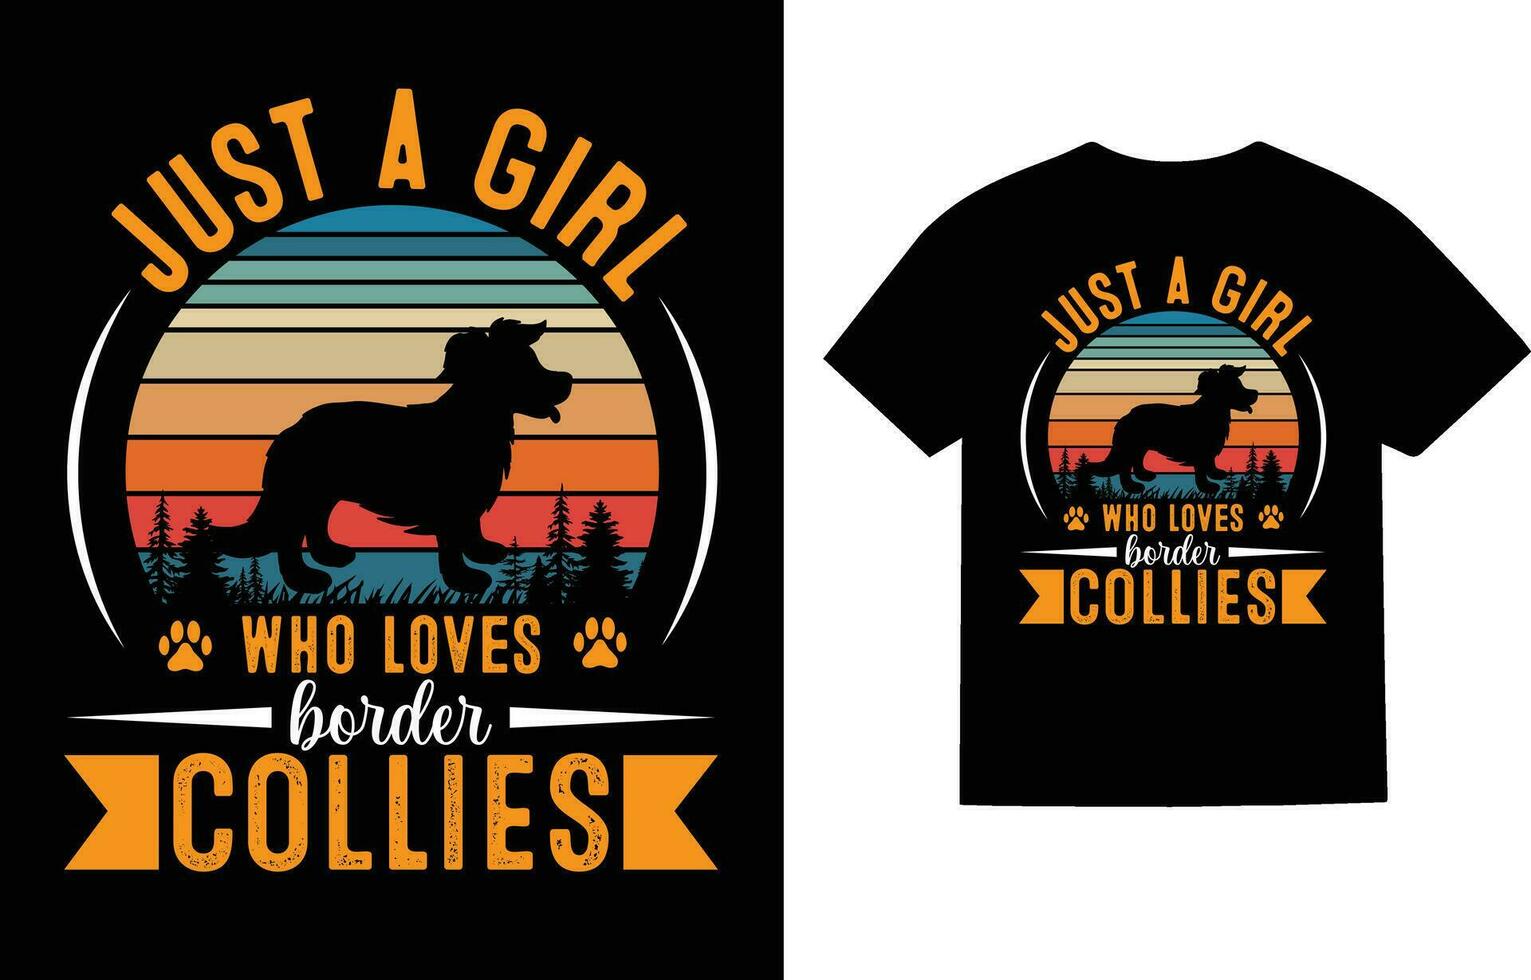 grens collie hond t-shirt ontwerp vector